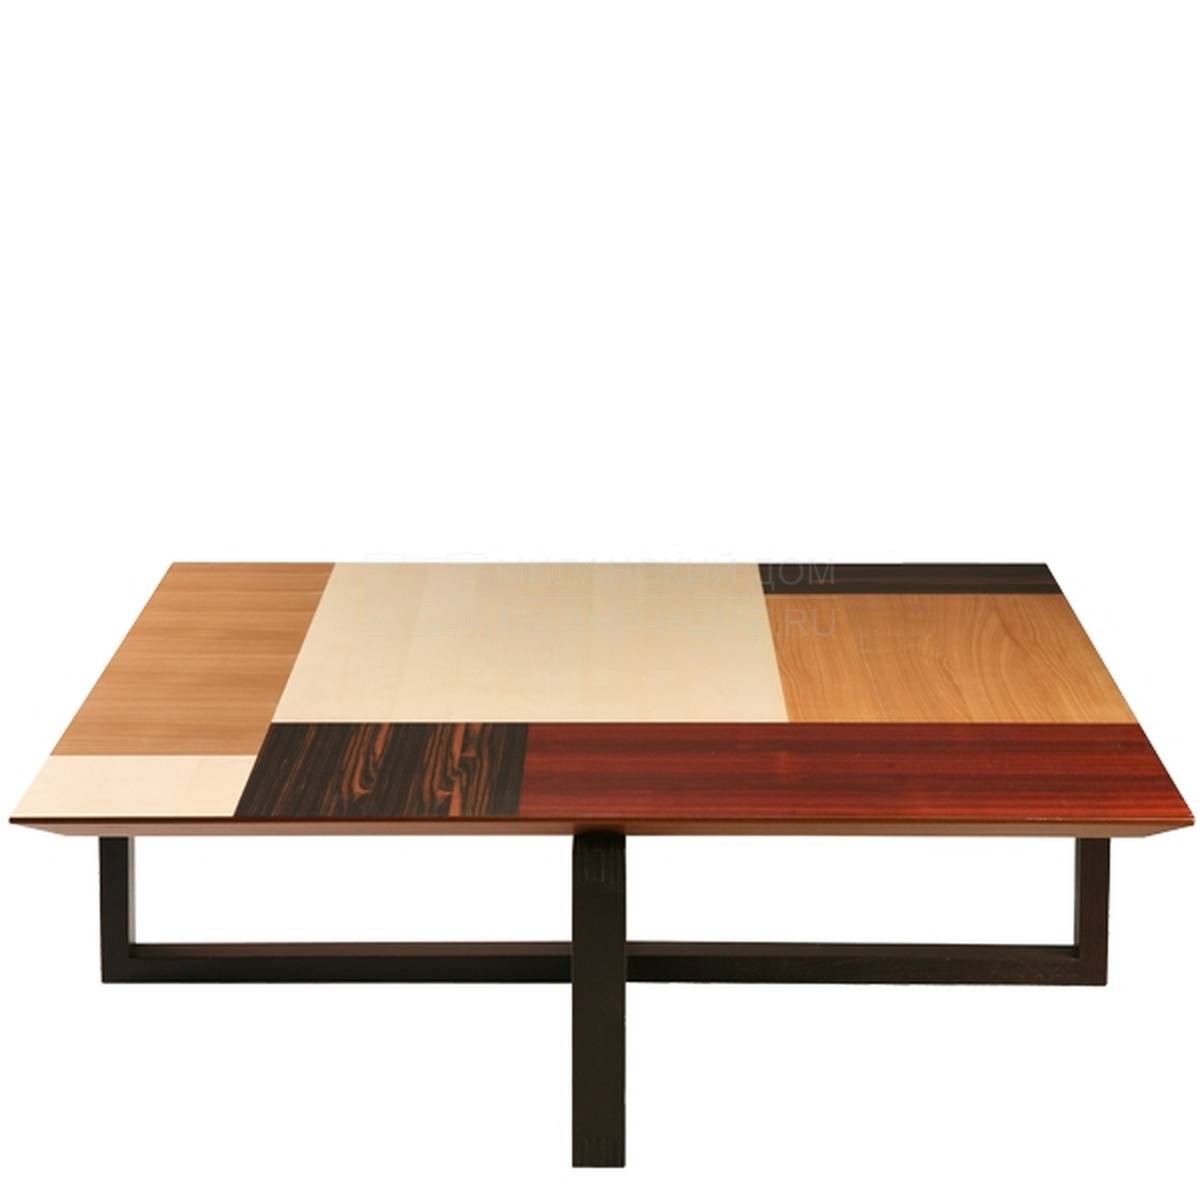 Кофейный столик Art.5604/Tavolino Patchwork из Италии фабрики MORELATO